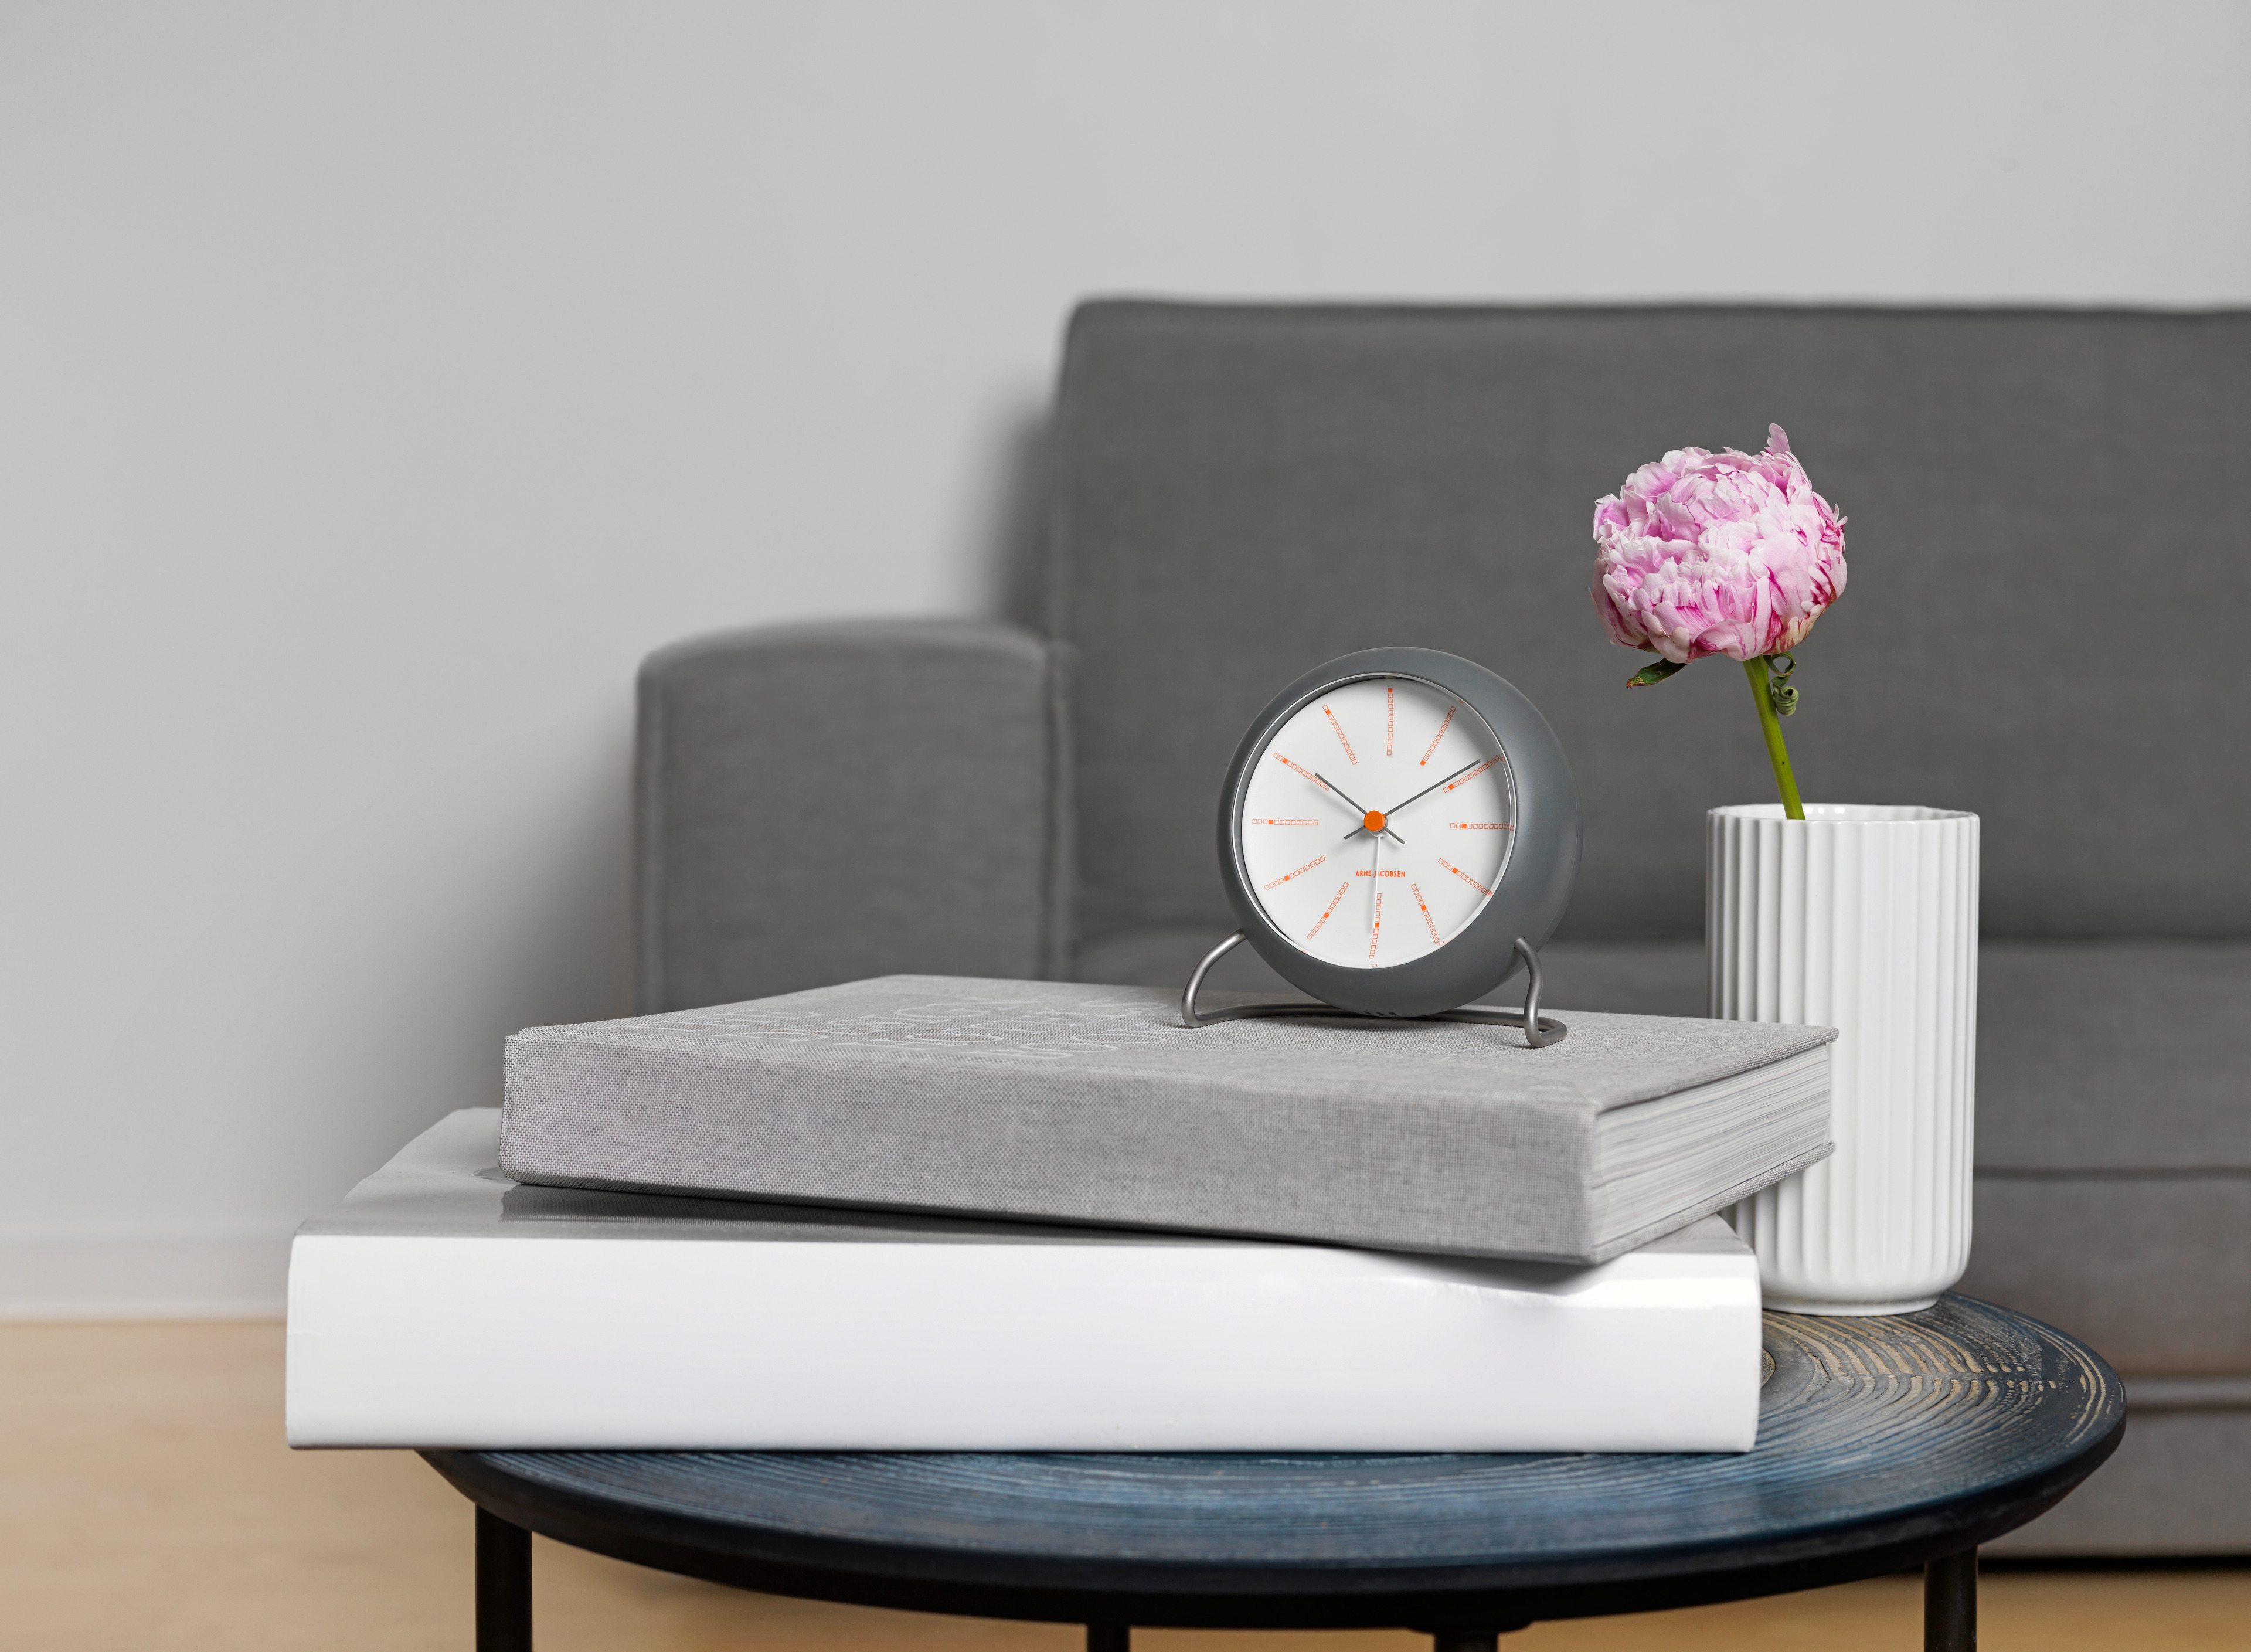 Wecker von Arne Jacobsen Clocks auf Couchtisch